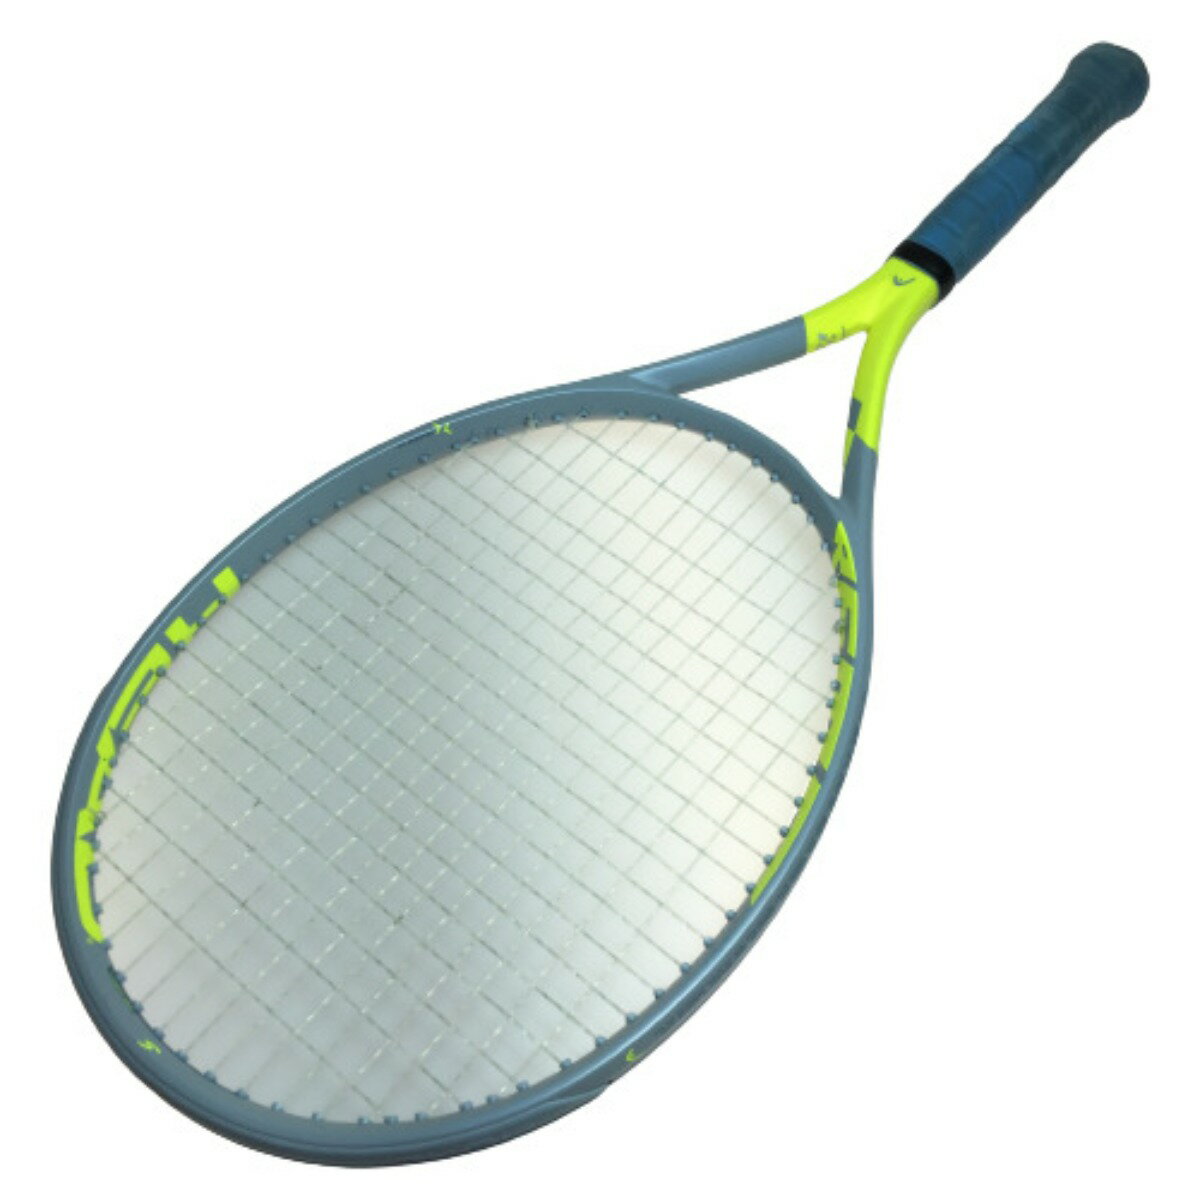 ◎◎【中古】HEAD ヘッド EXTREME S エクストリームS G2 硬式テニスラケット Cランク